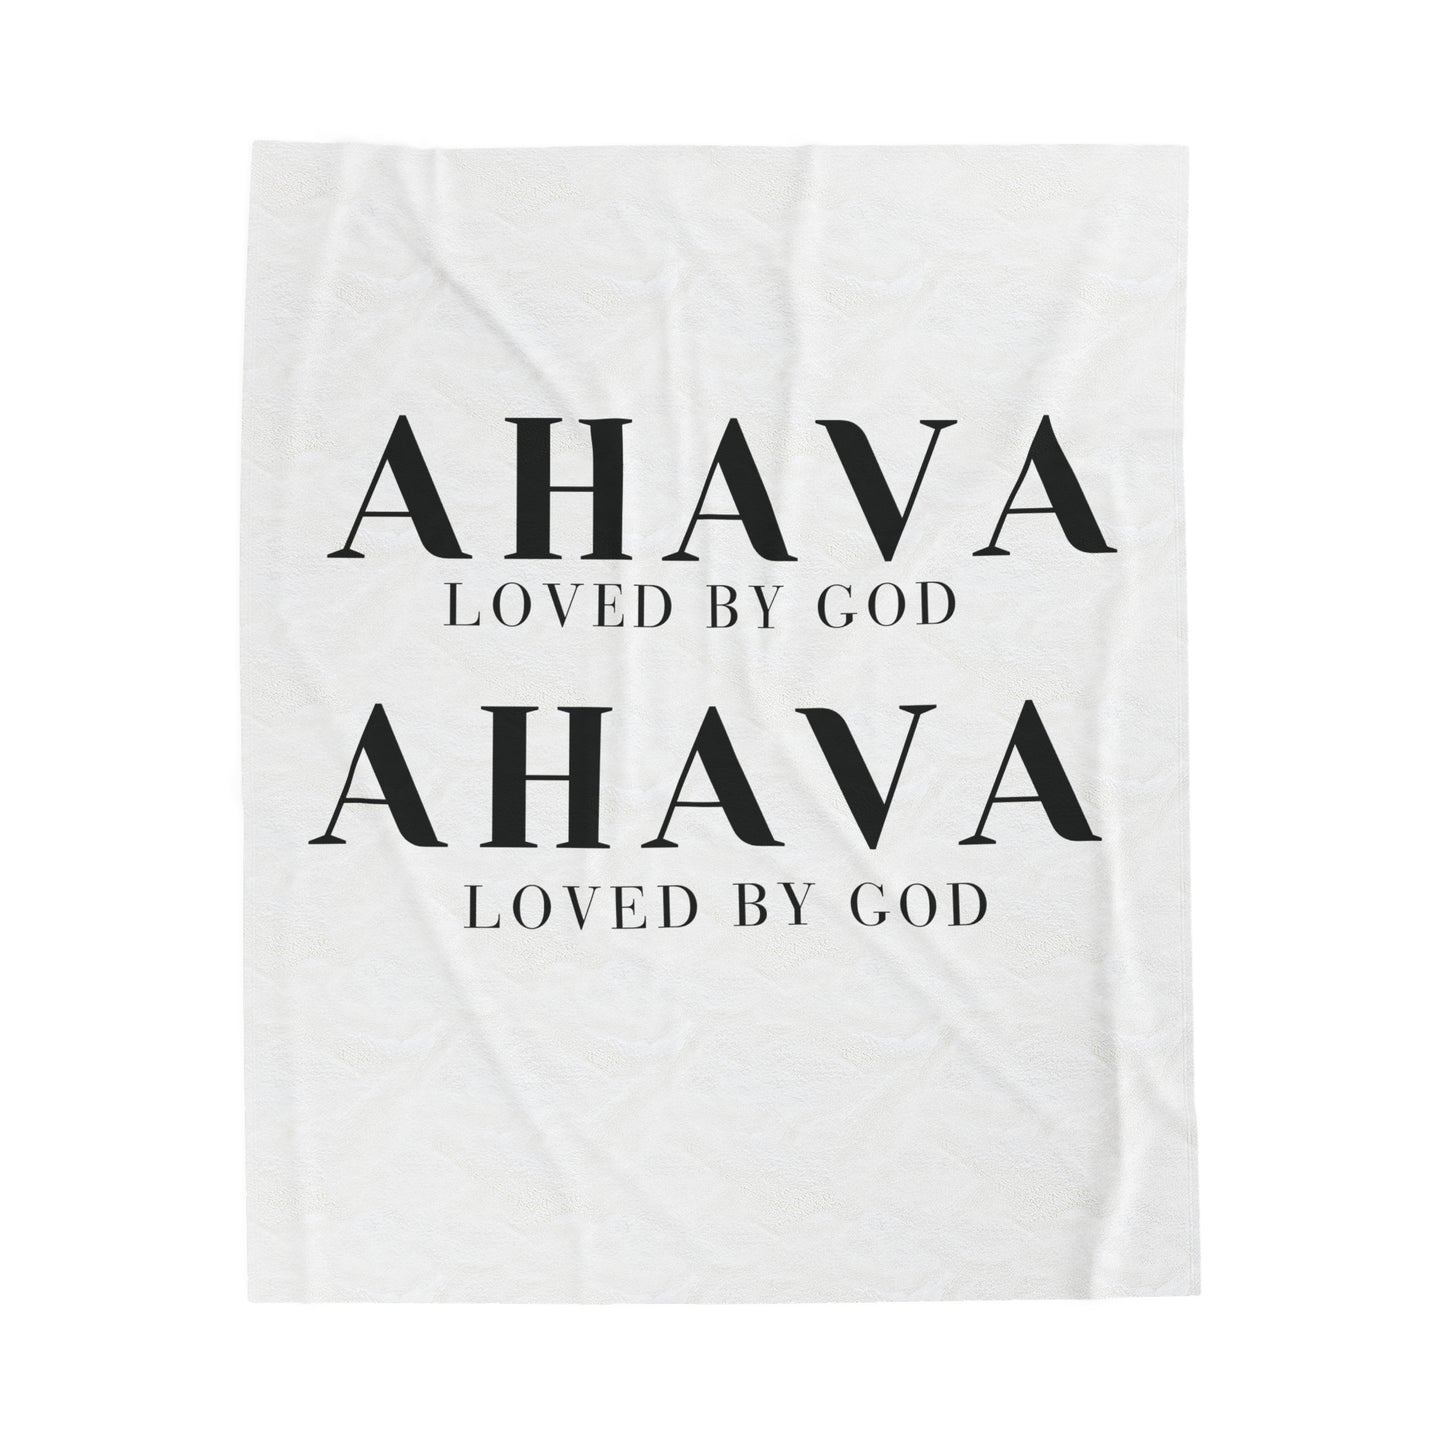 Ahava: Loved by God Blanket